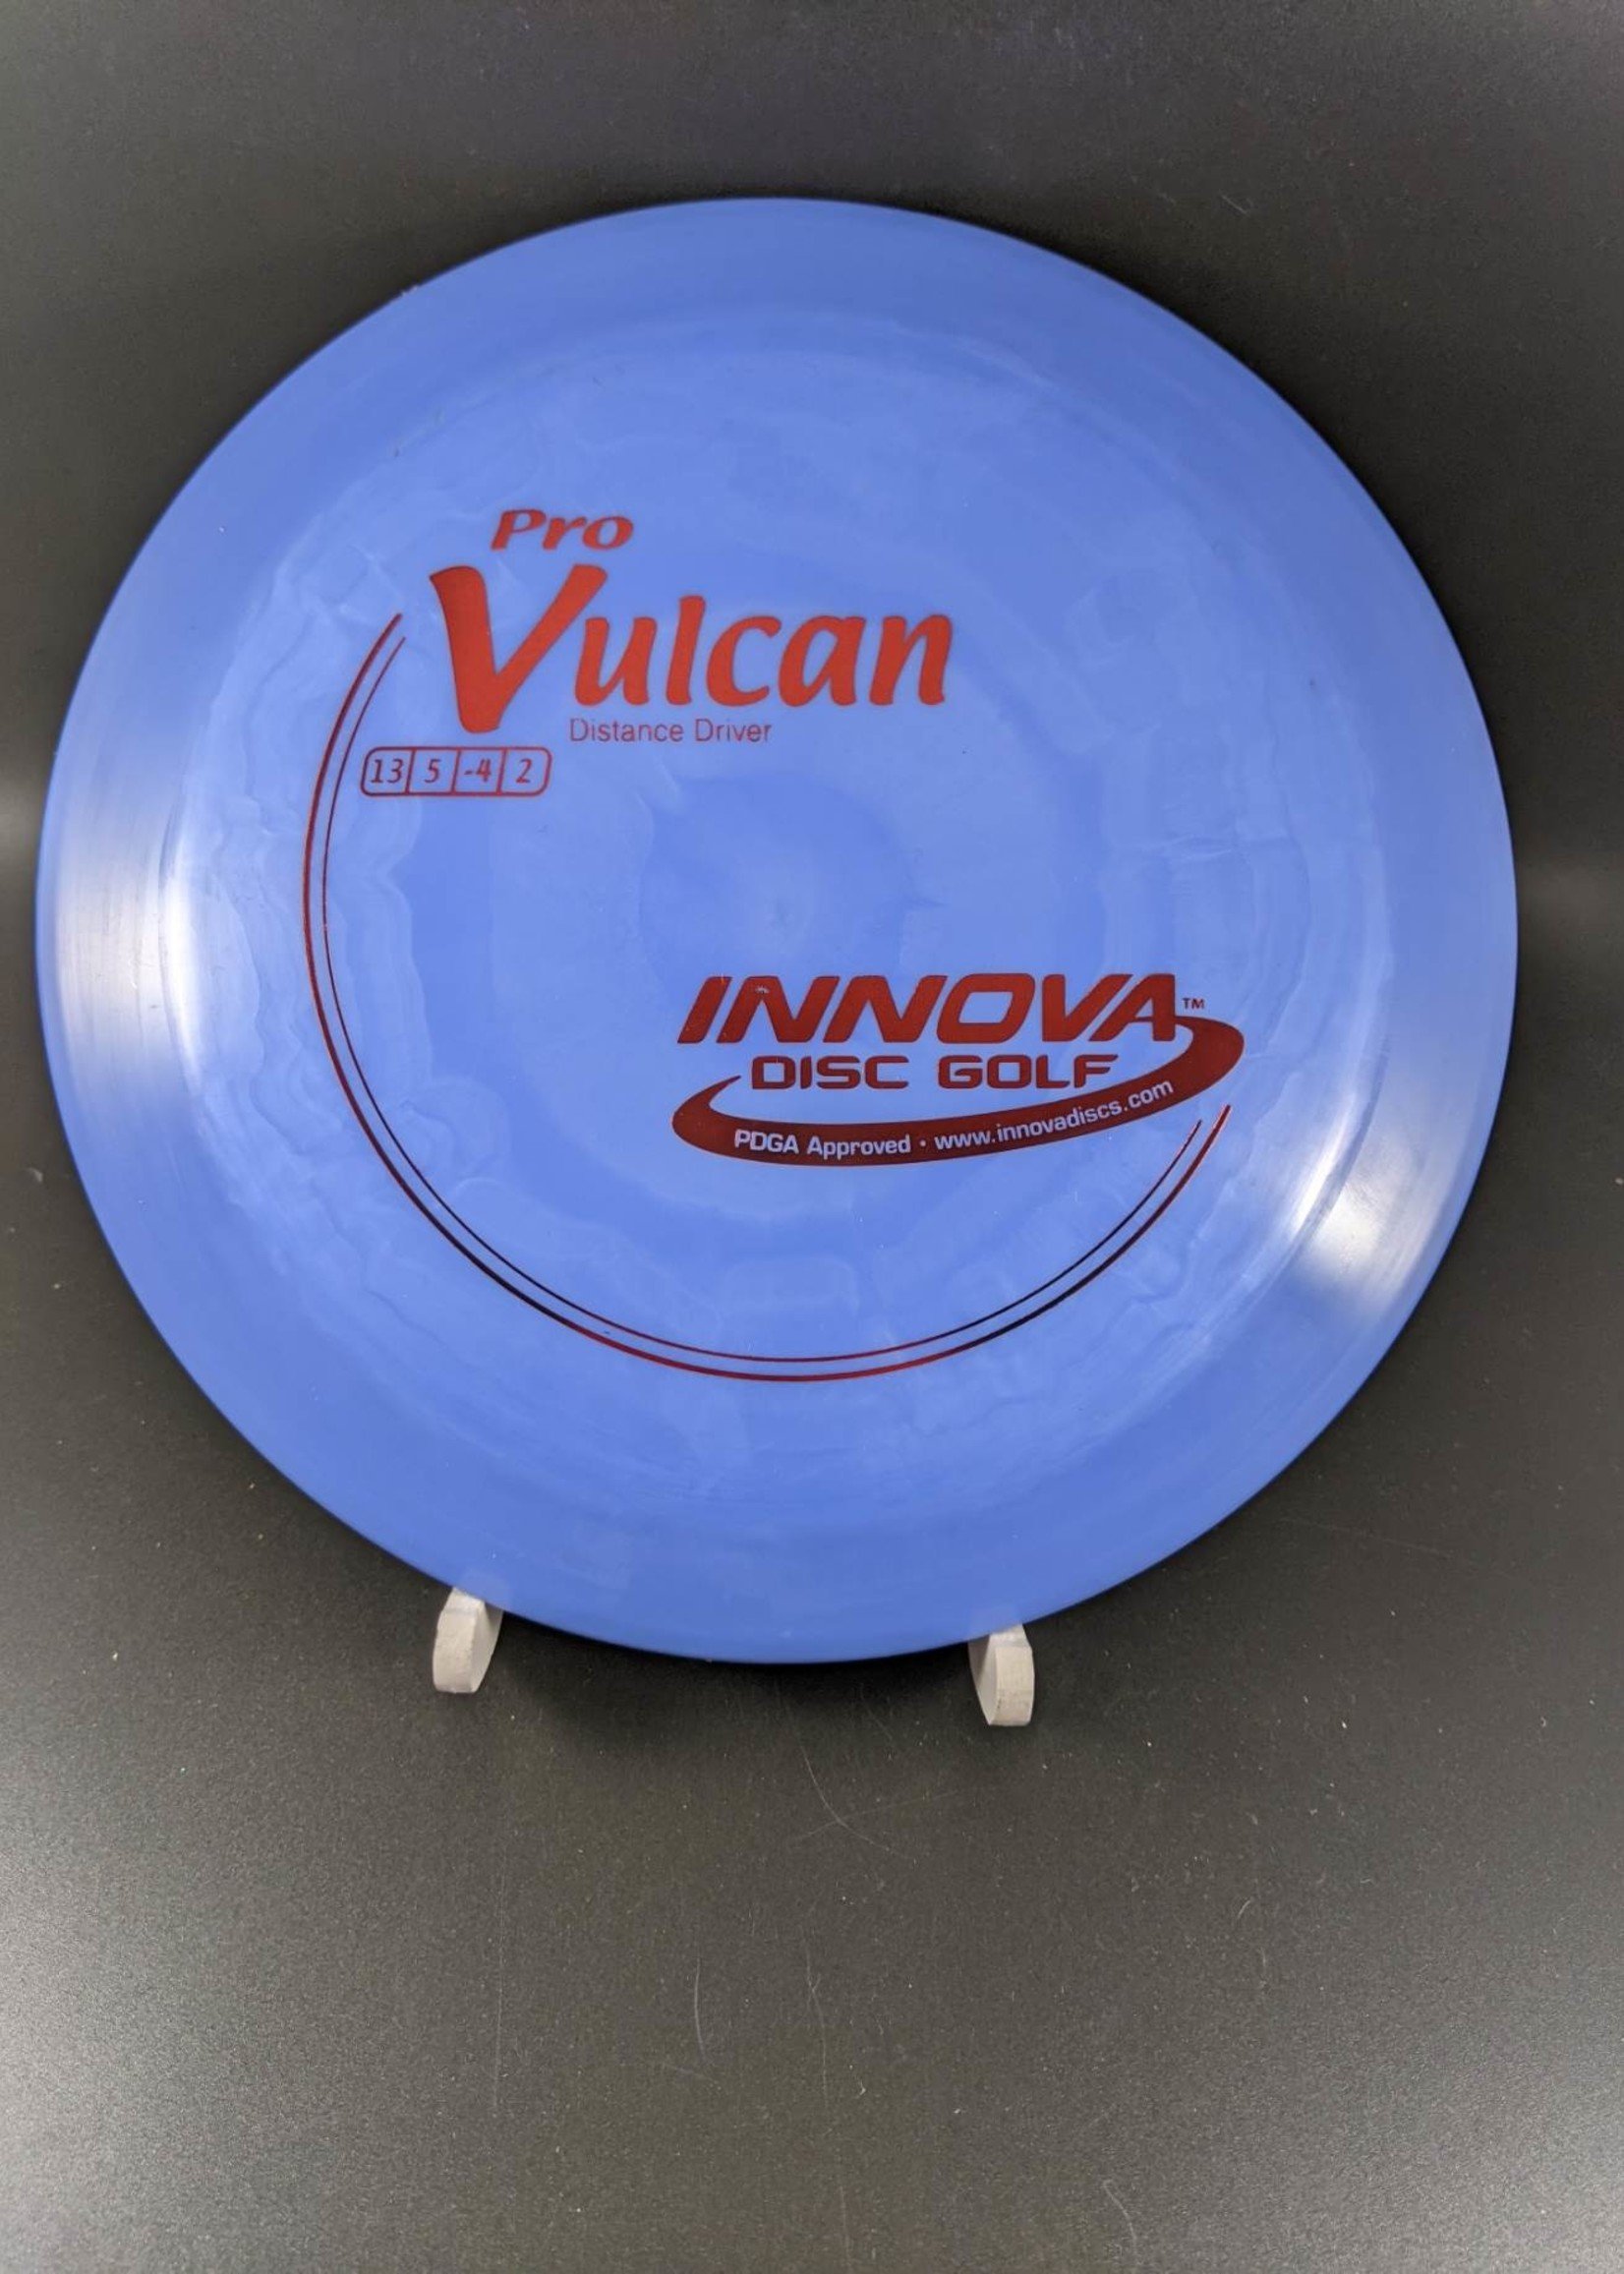 Innova Innova Pro Vulcan